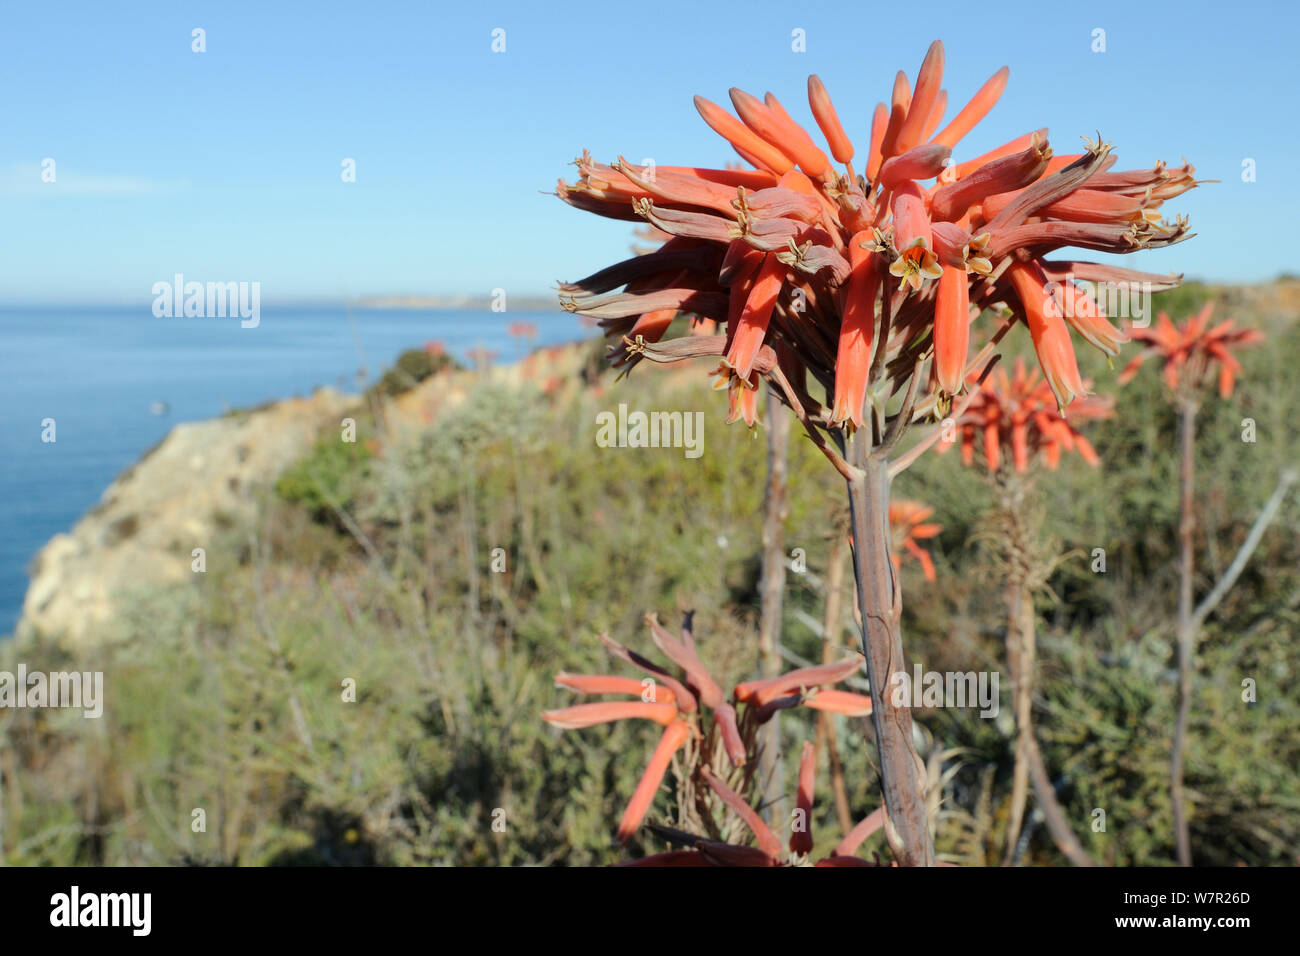 Jabón de Aloe (Aloe maculata / saponaria) florece en lo alto de un acantilado, con el mar al fondo. Algarve, Portugal, en junio. Foto de stock